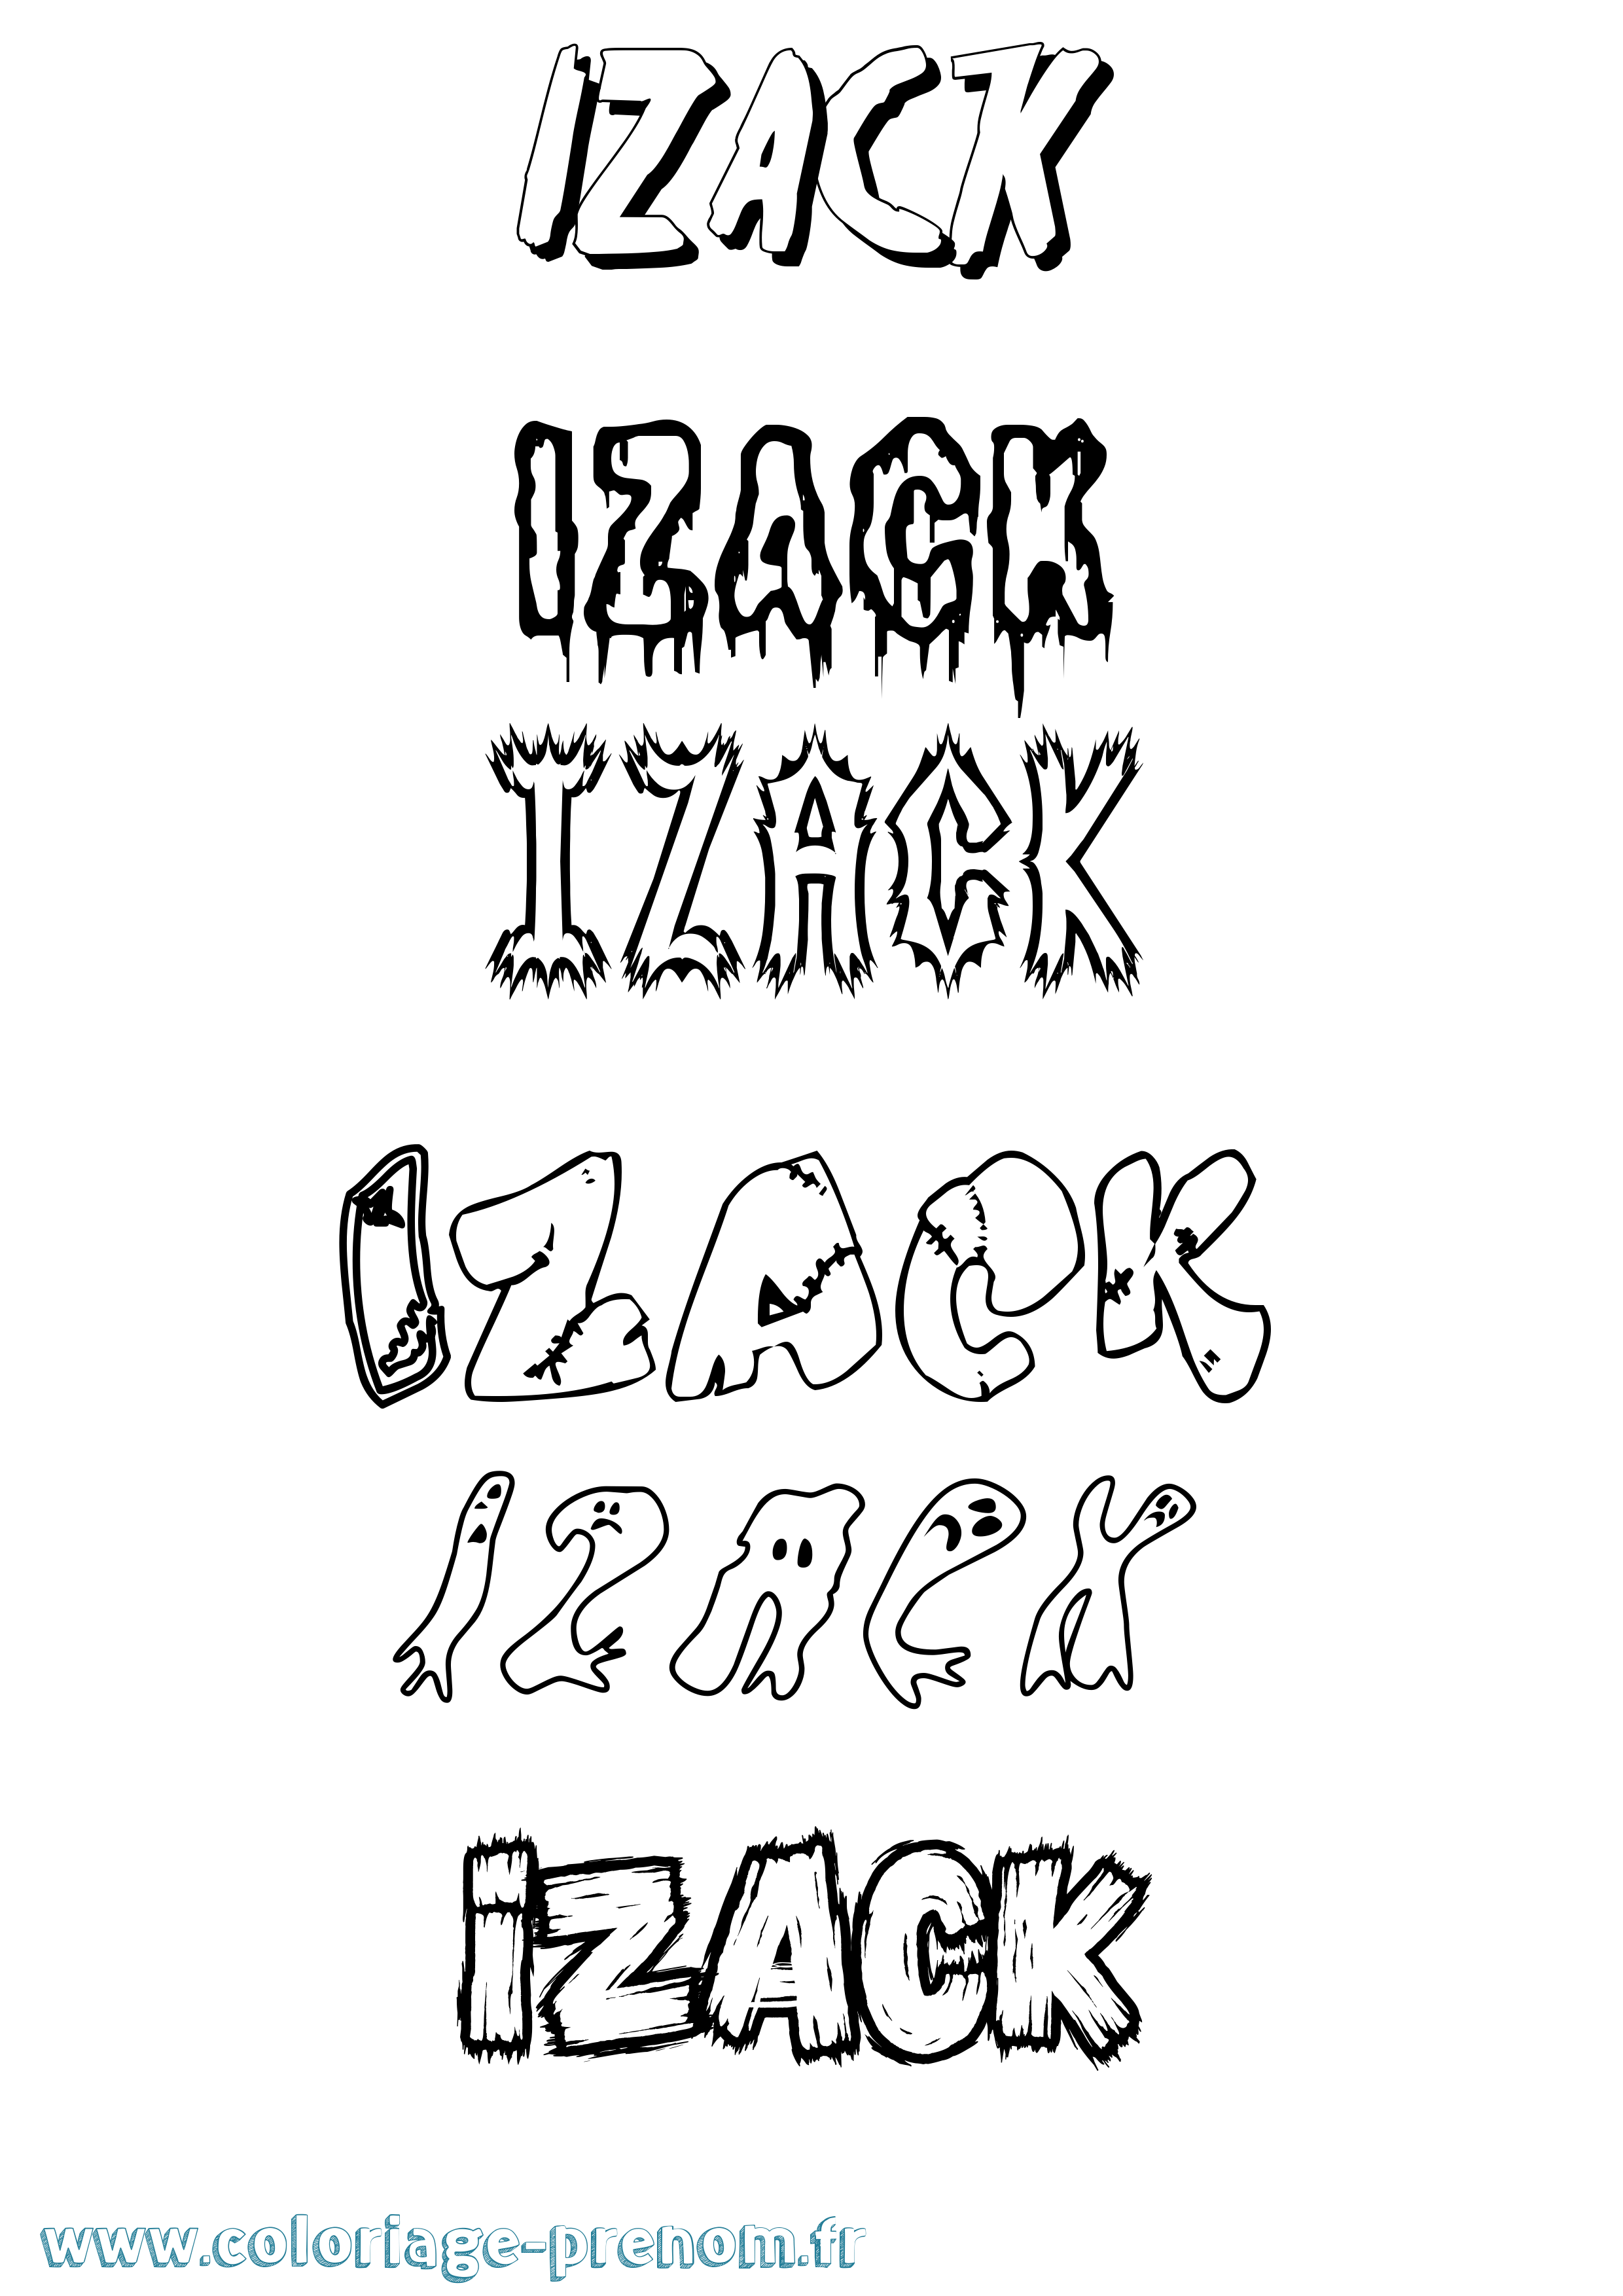 Coloriage prénom Izack Frisson